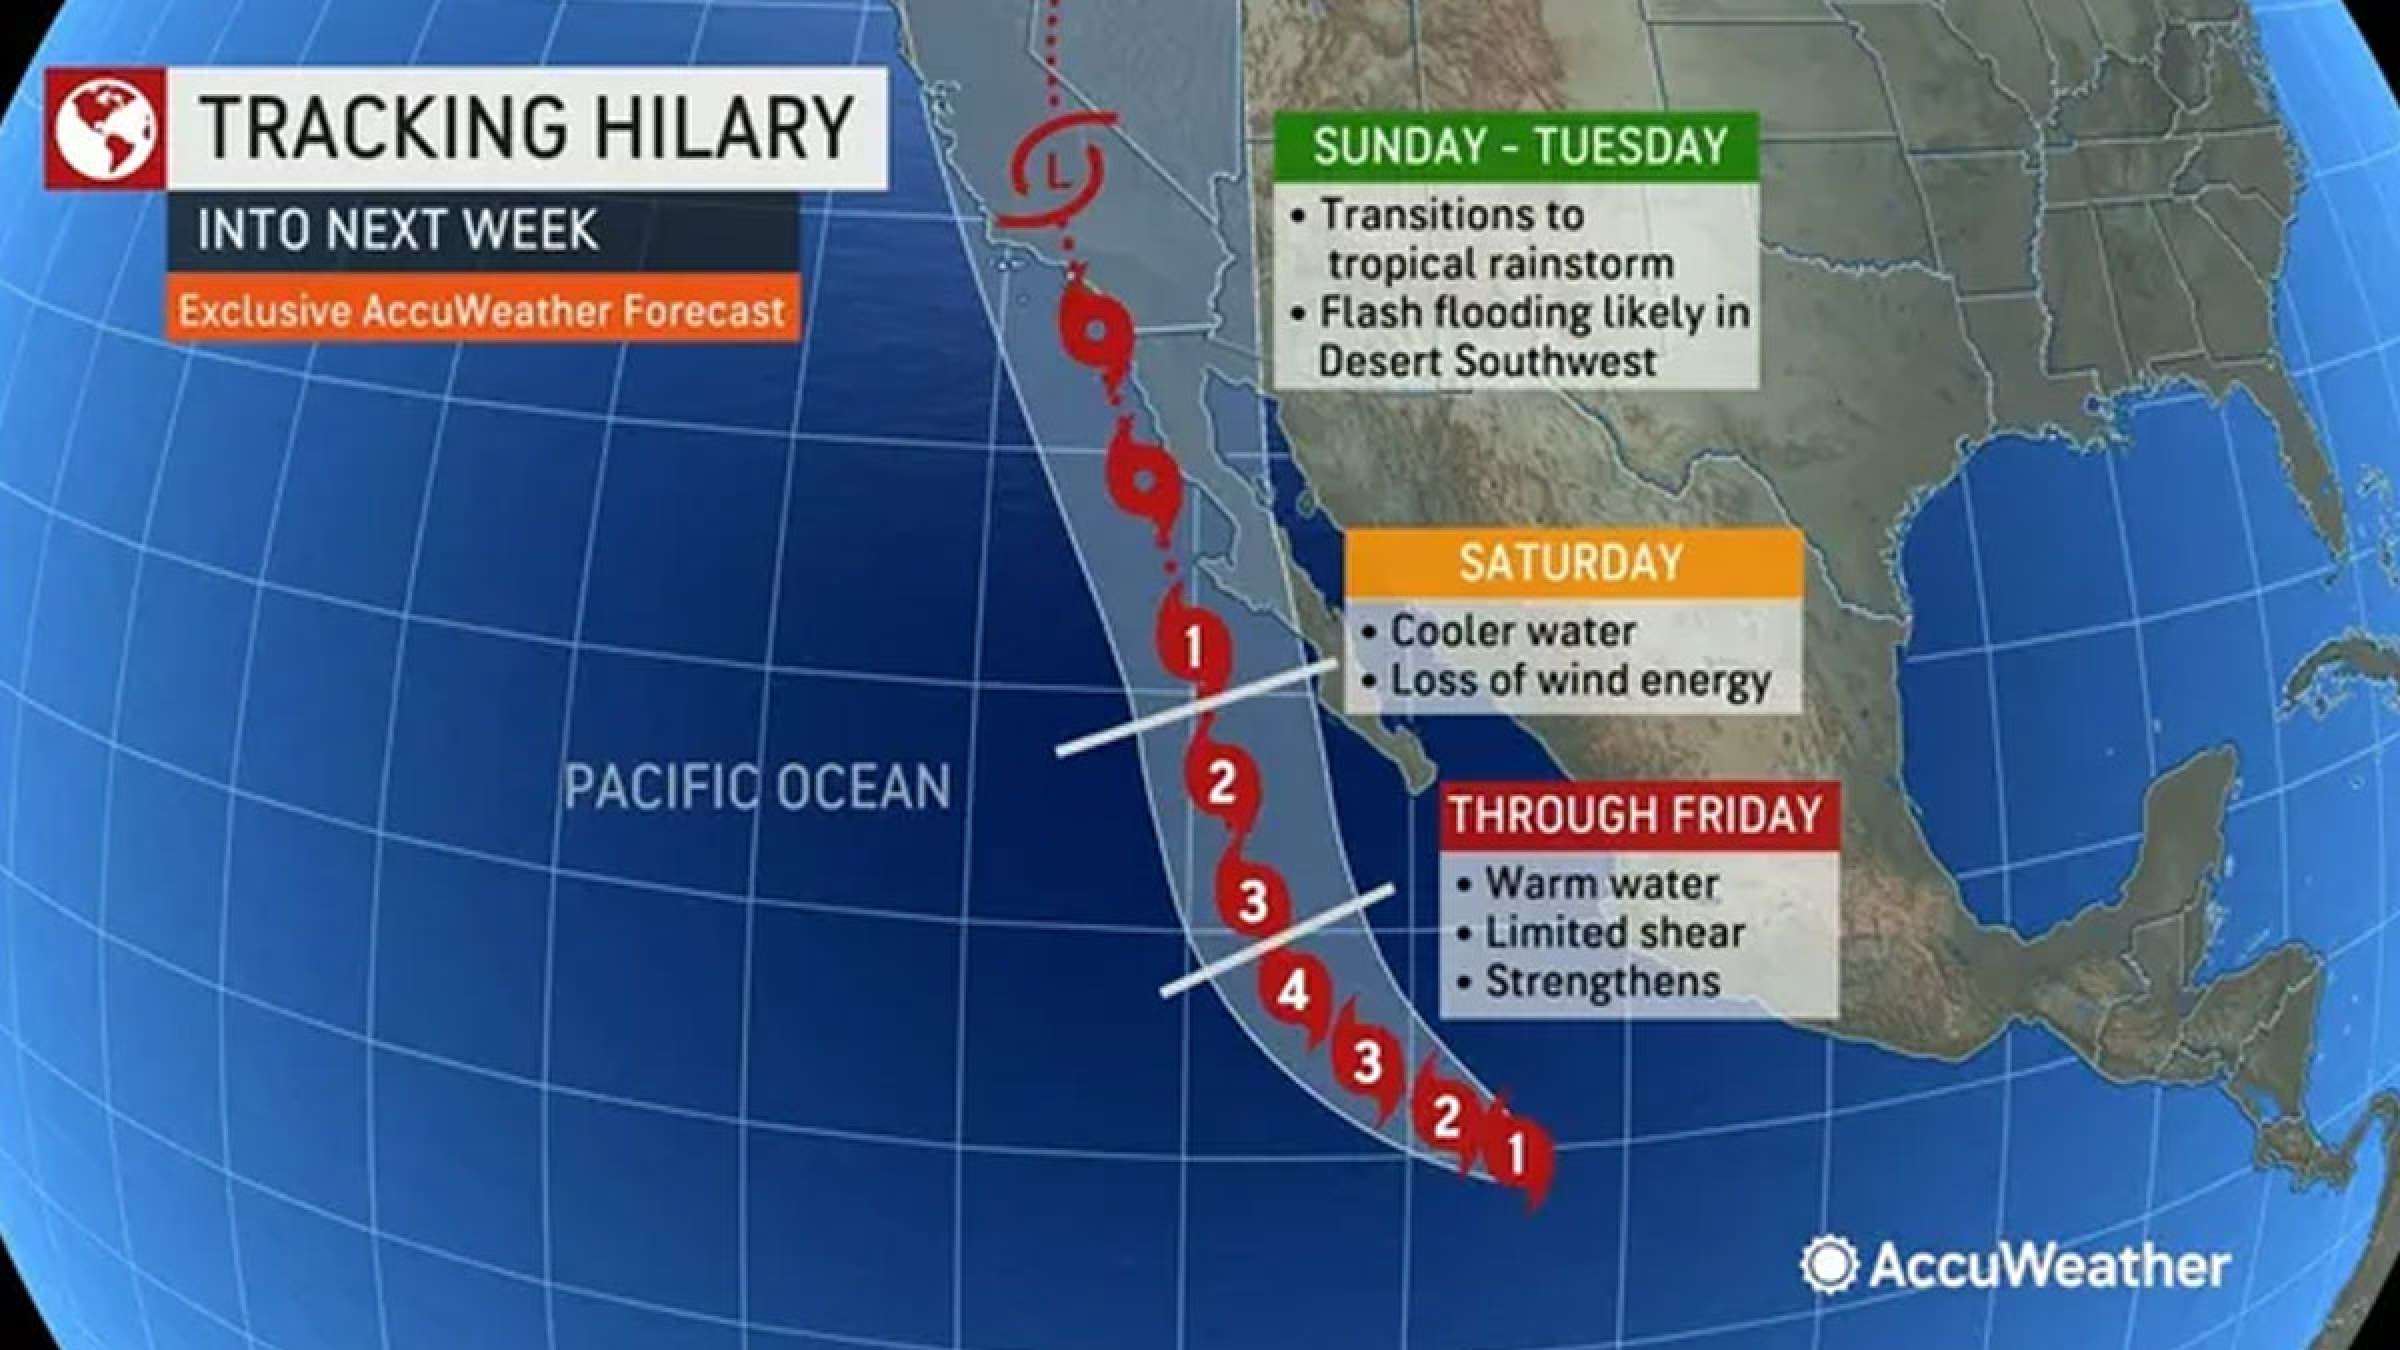 خبر-اعلان-وضعیت-اضطراری-طوفان-اولین-بار-کالیفرنیا-هیلاری-از-غرب-آمریکا-مکزیک